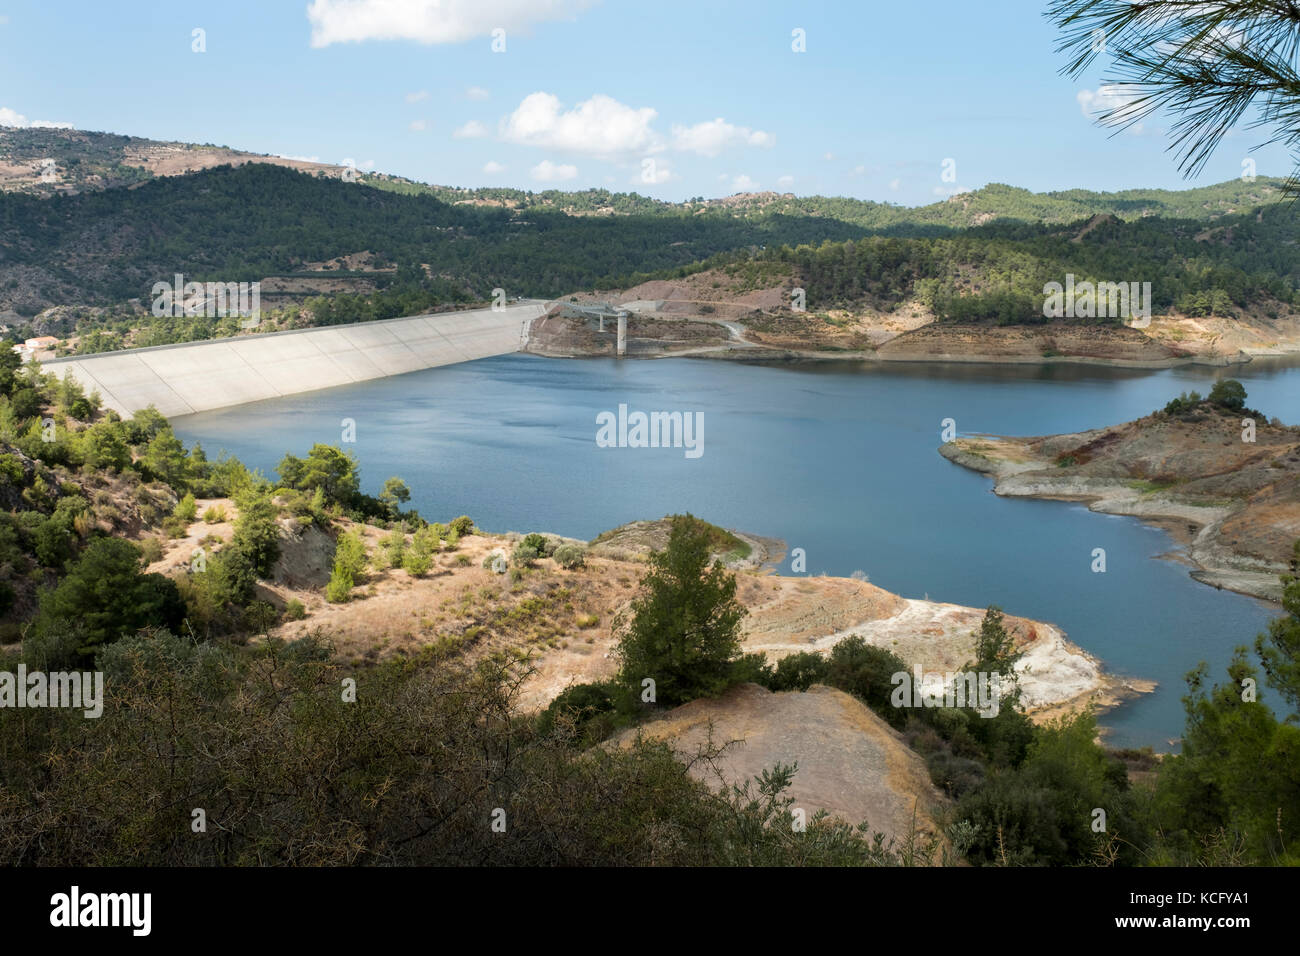 La diga Kannaviou, la quarta più grande diga di Cipro e il terzo più grande diga nel distretto di Paphos con una capacità di 17,2 milioni di metri cubici. Foto Stock